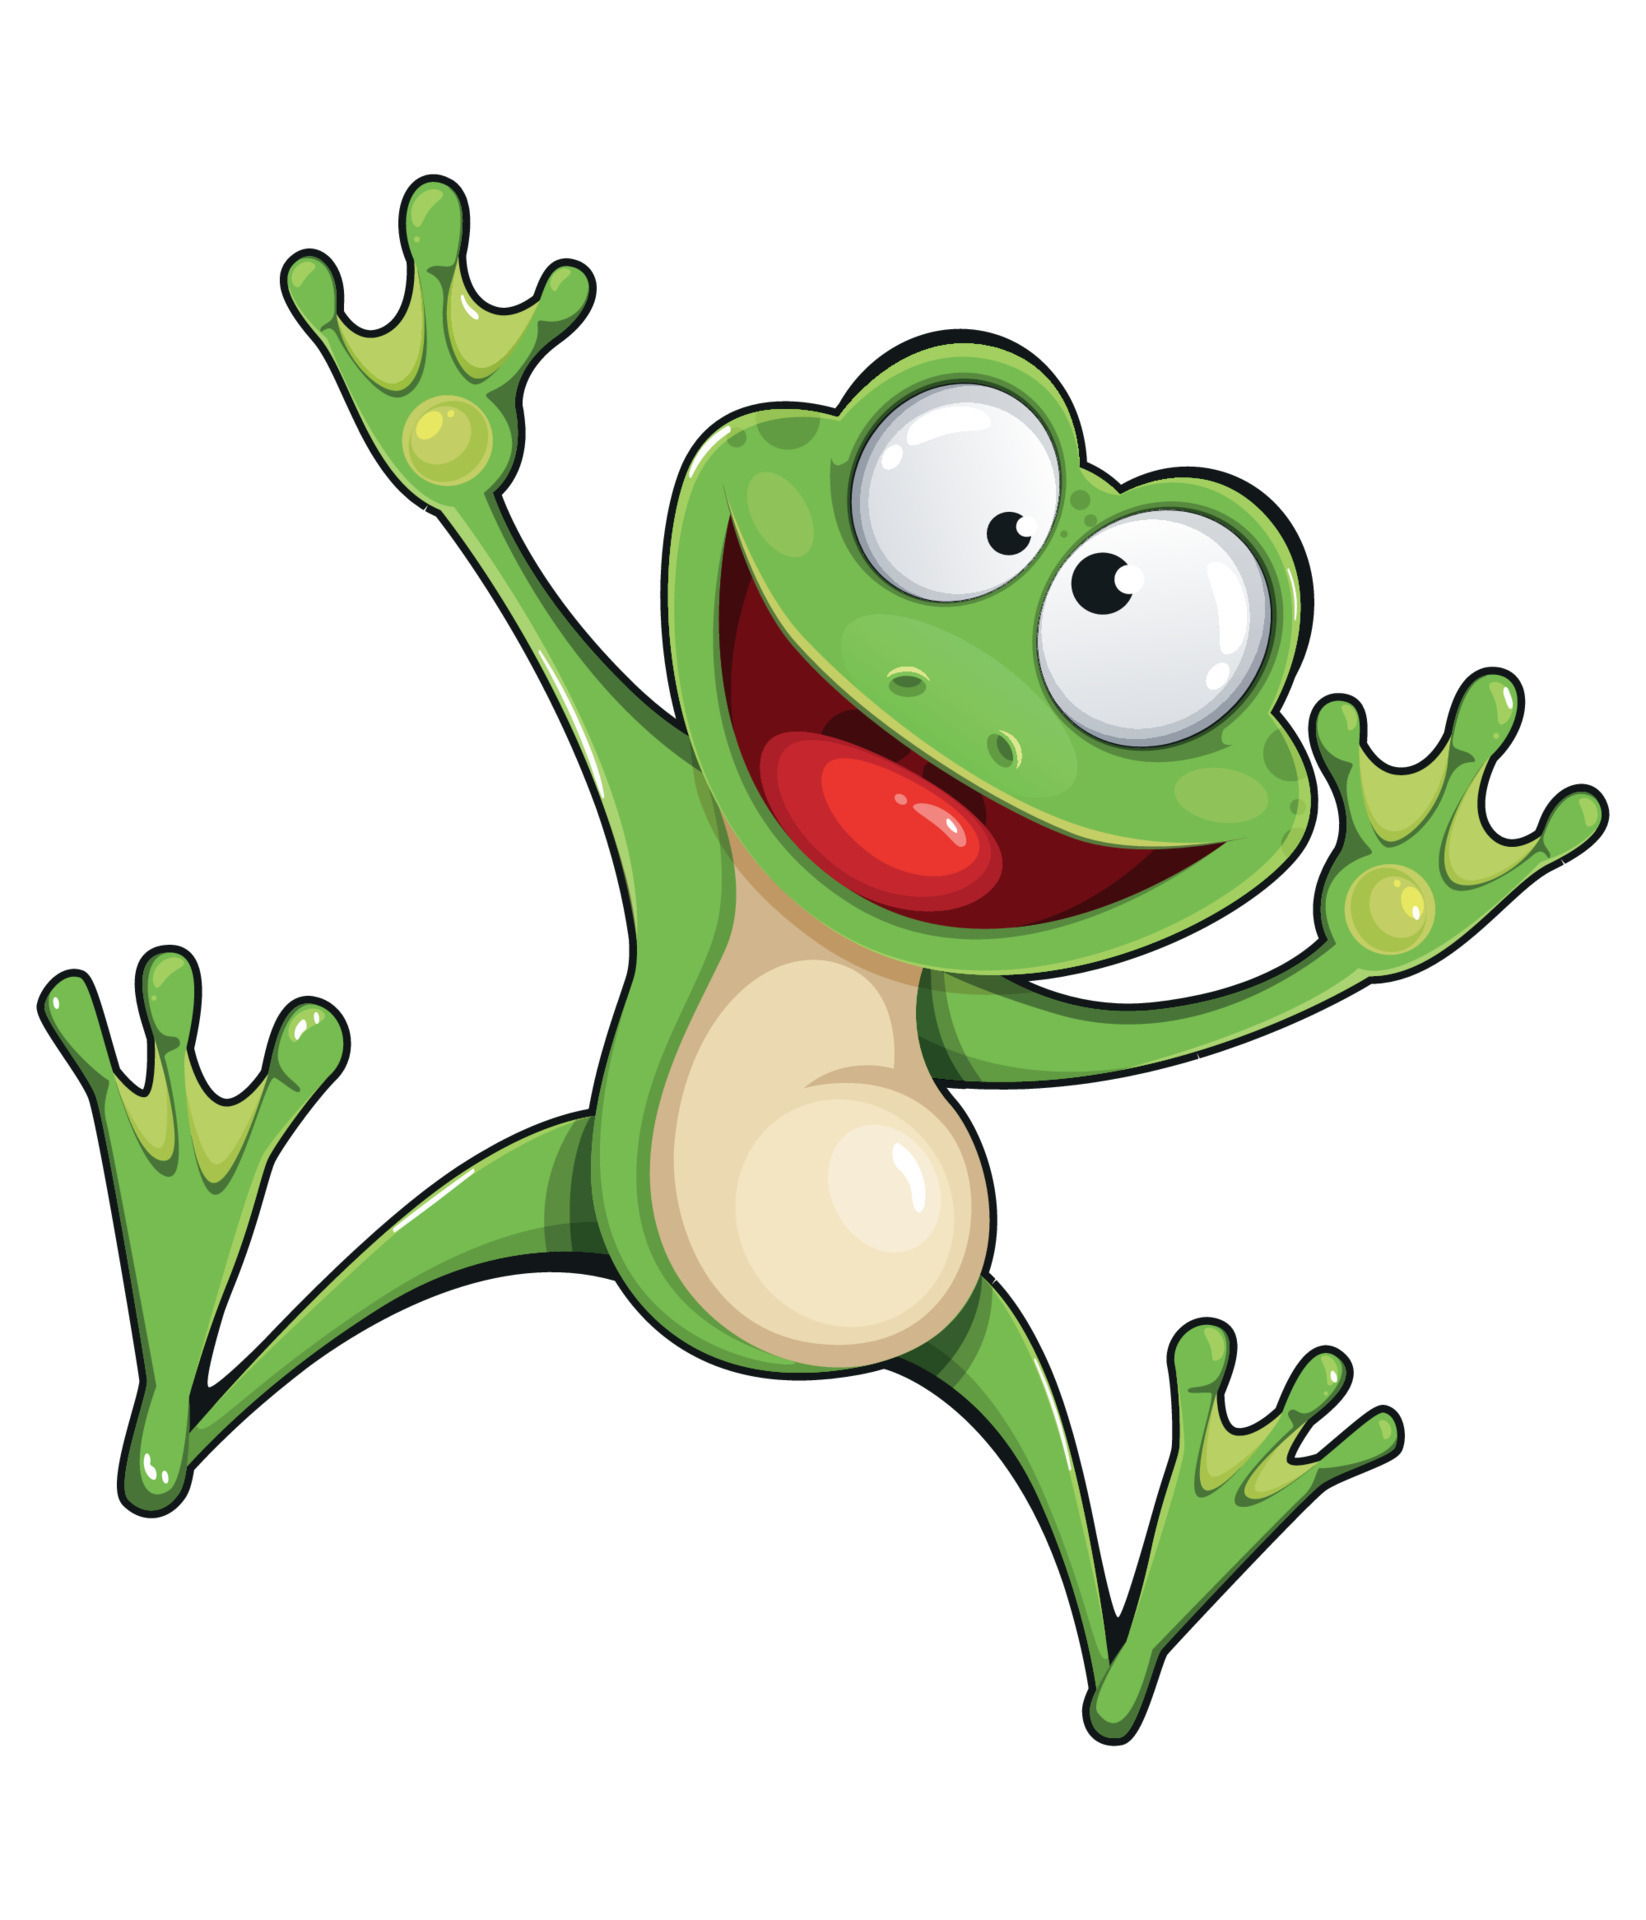 Frog cartoon character. Funny frog 8042963 Vector Art at Vecteezy